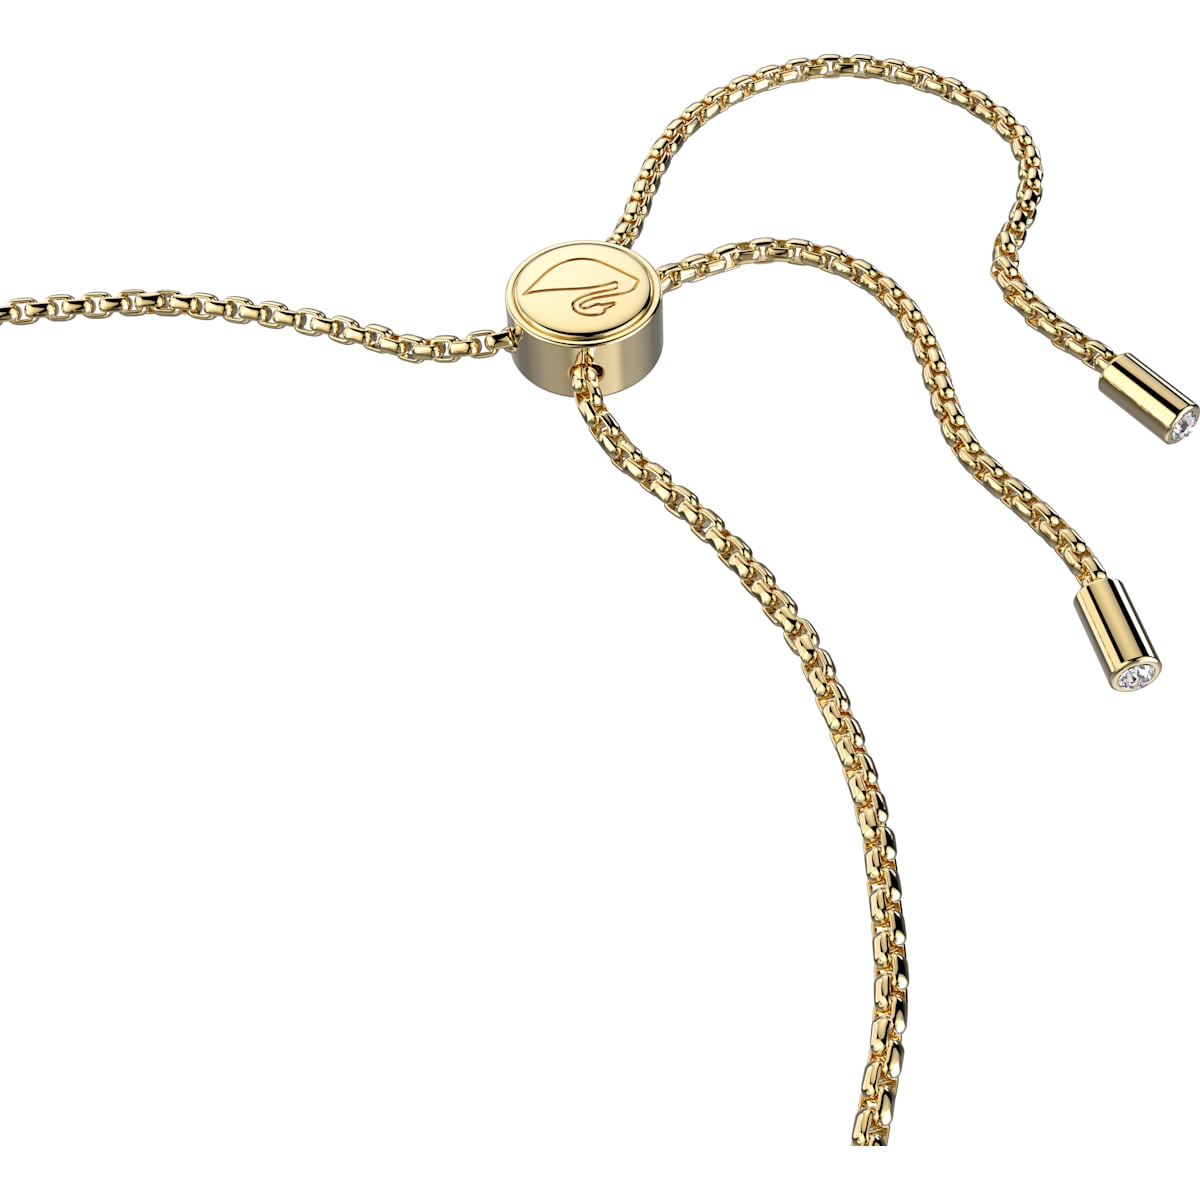 Swarovski - Lovely Armband, Herz, Weiß, Goldlegierungsschicht - CRYSTAL UNTERBERGER